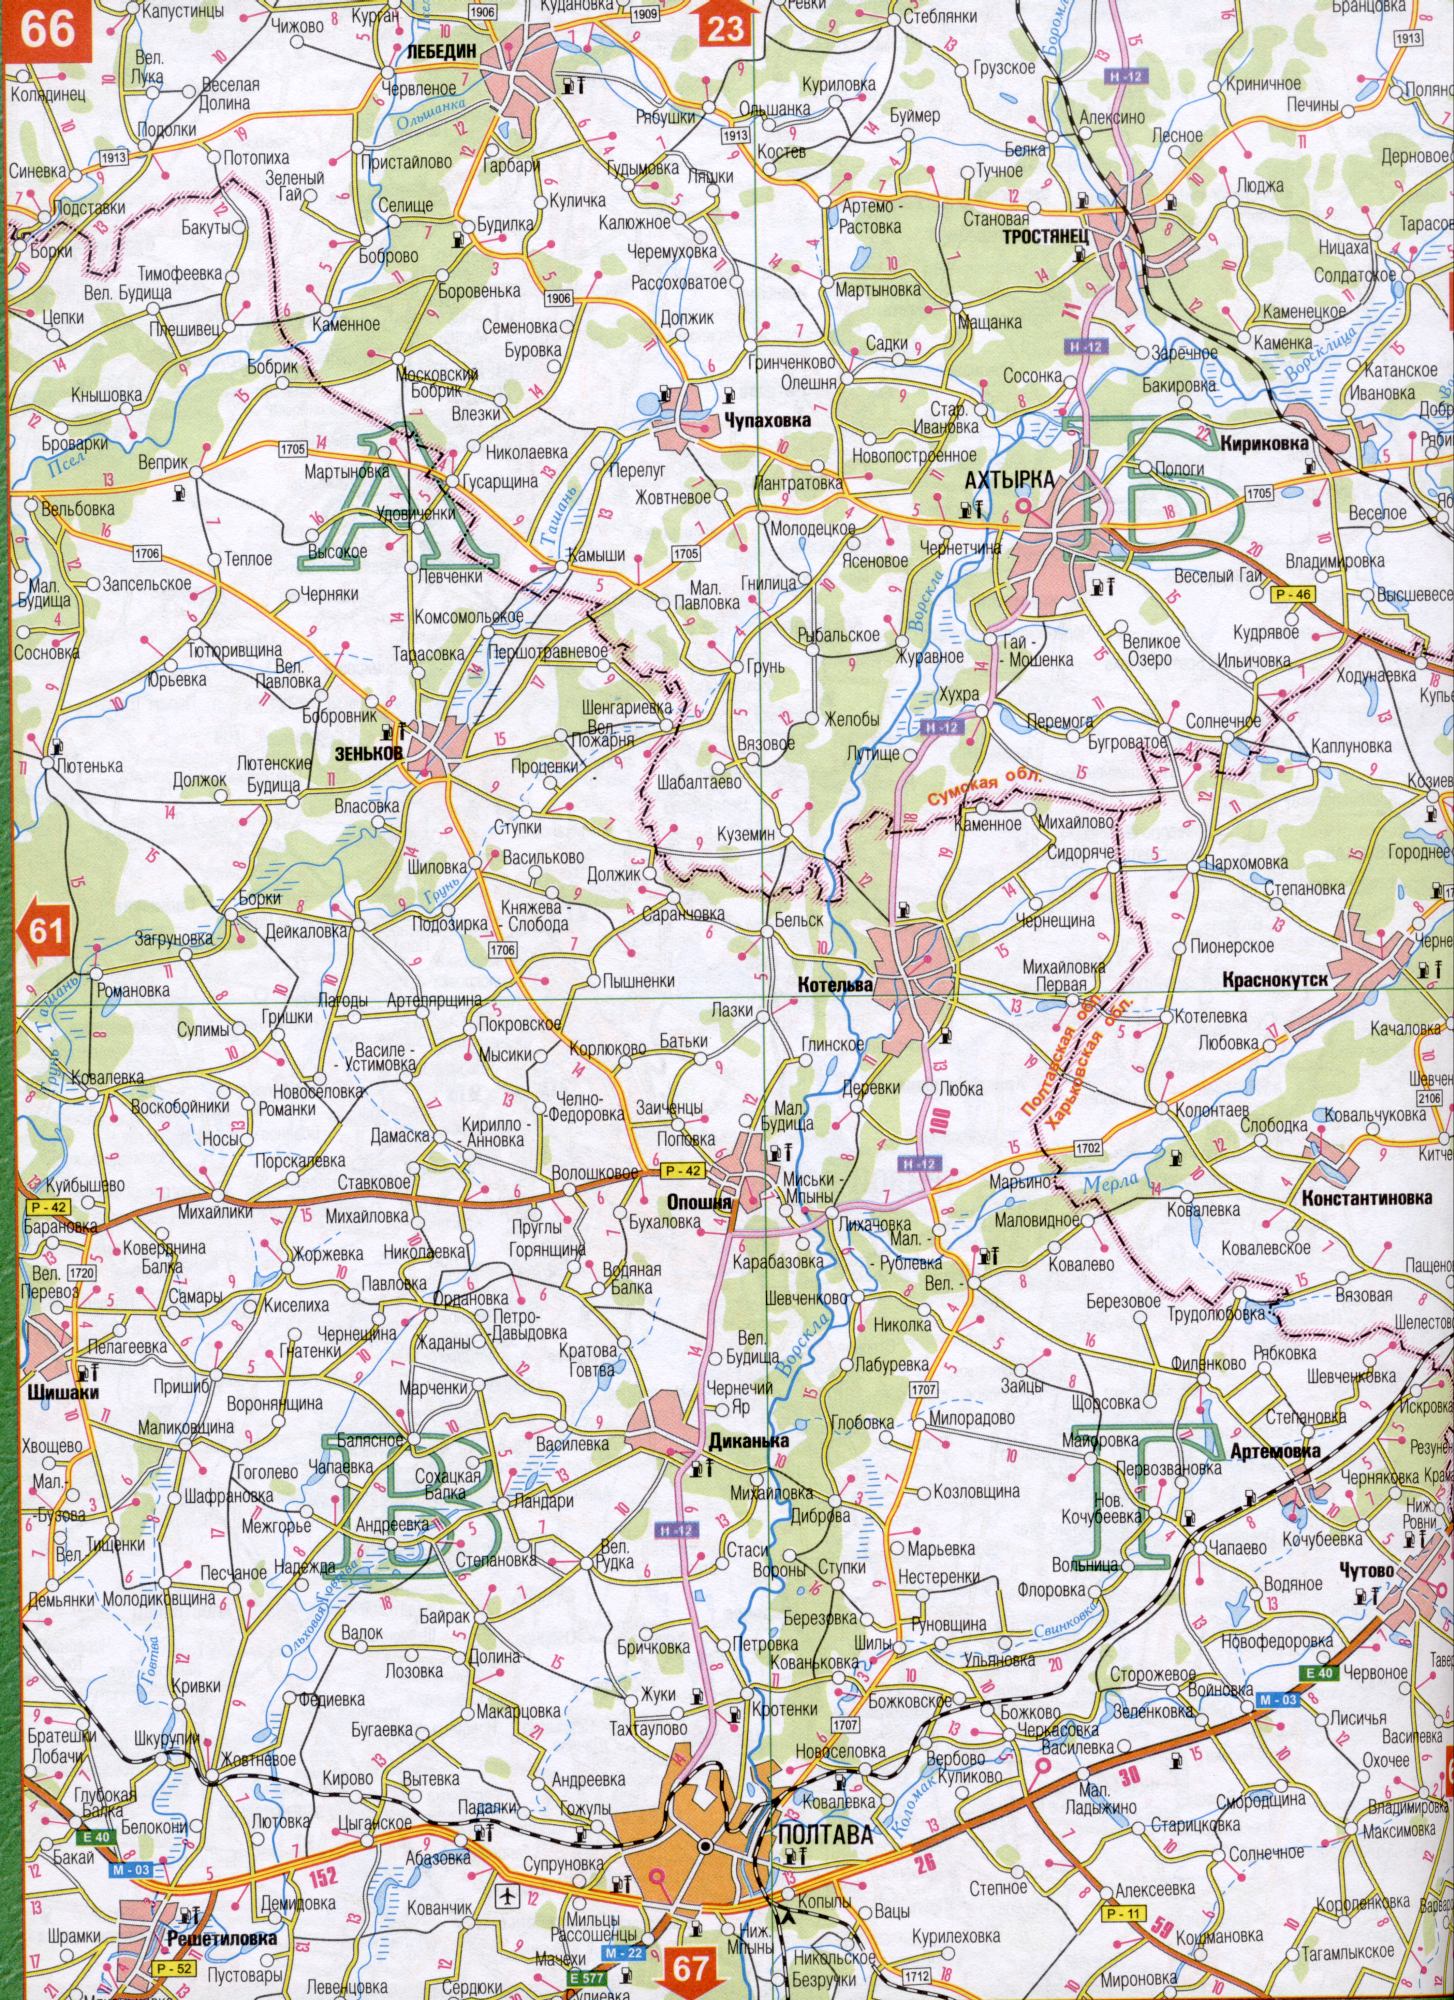 Карта Полтавской области Украины (областной центр г.Полтава). Скачать бесплатно подробную карту , B0 - Ташань, Ницаха, Самары, Бухаловка